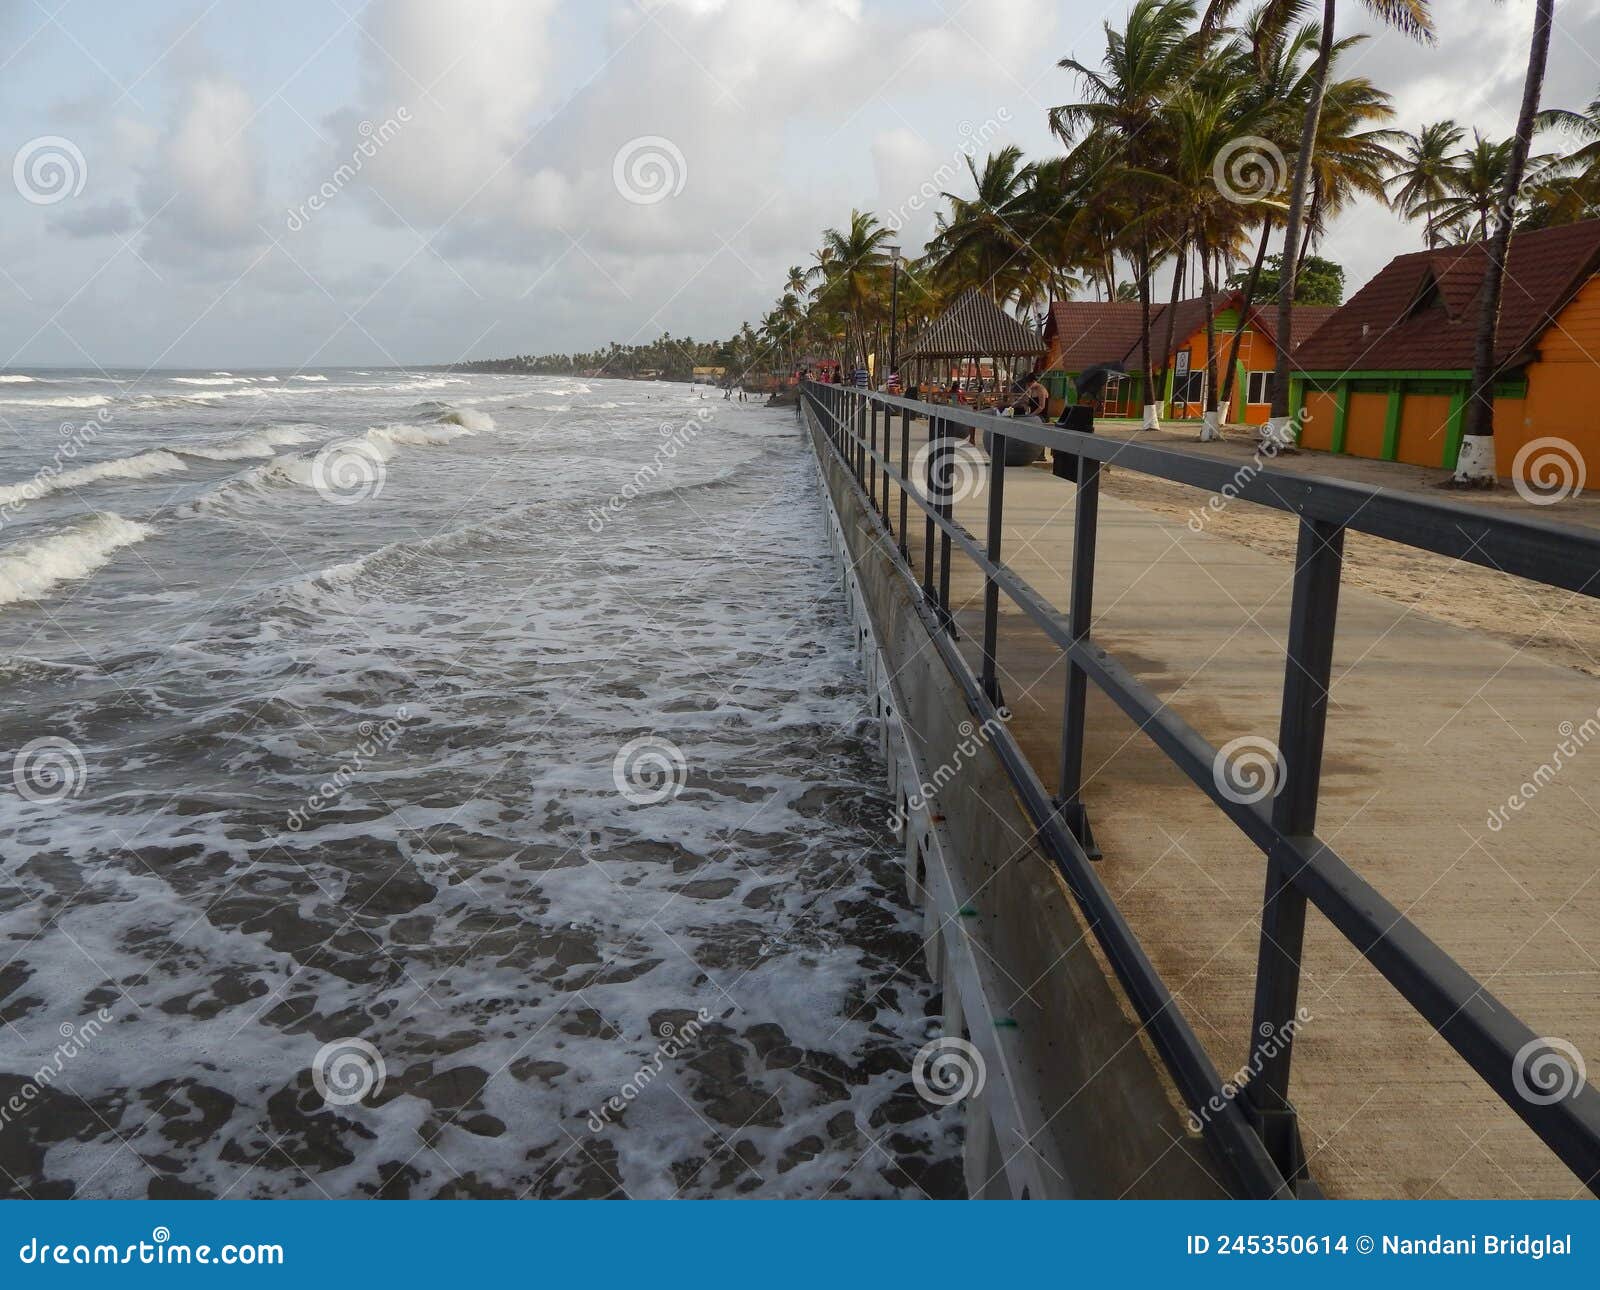 manzanilla beach, trinidad and tobago, west indies